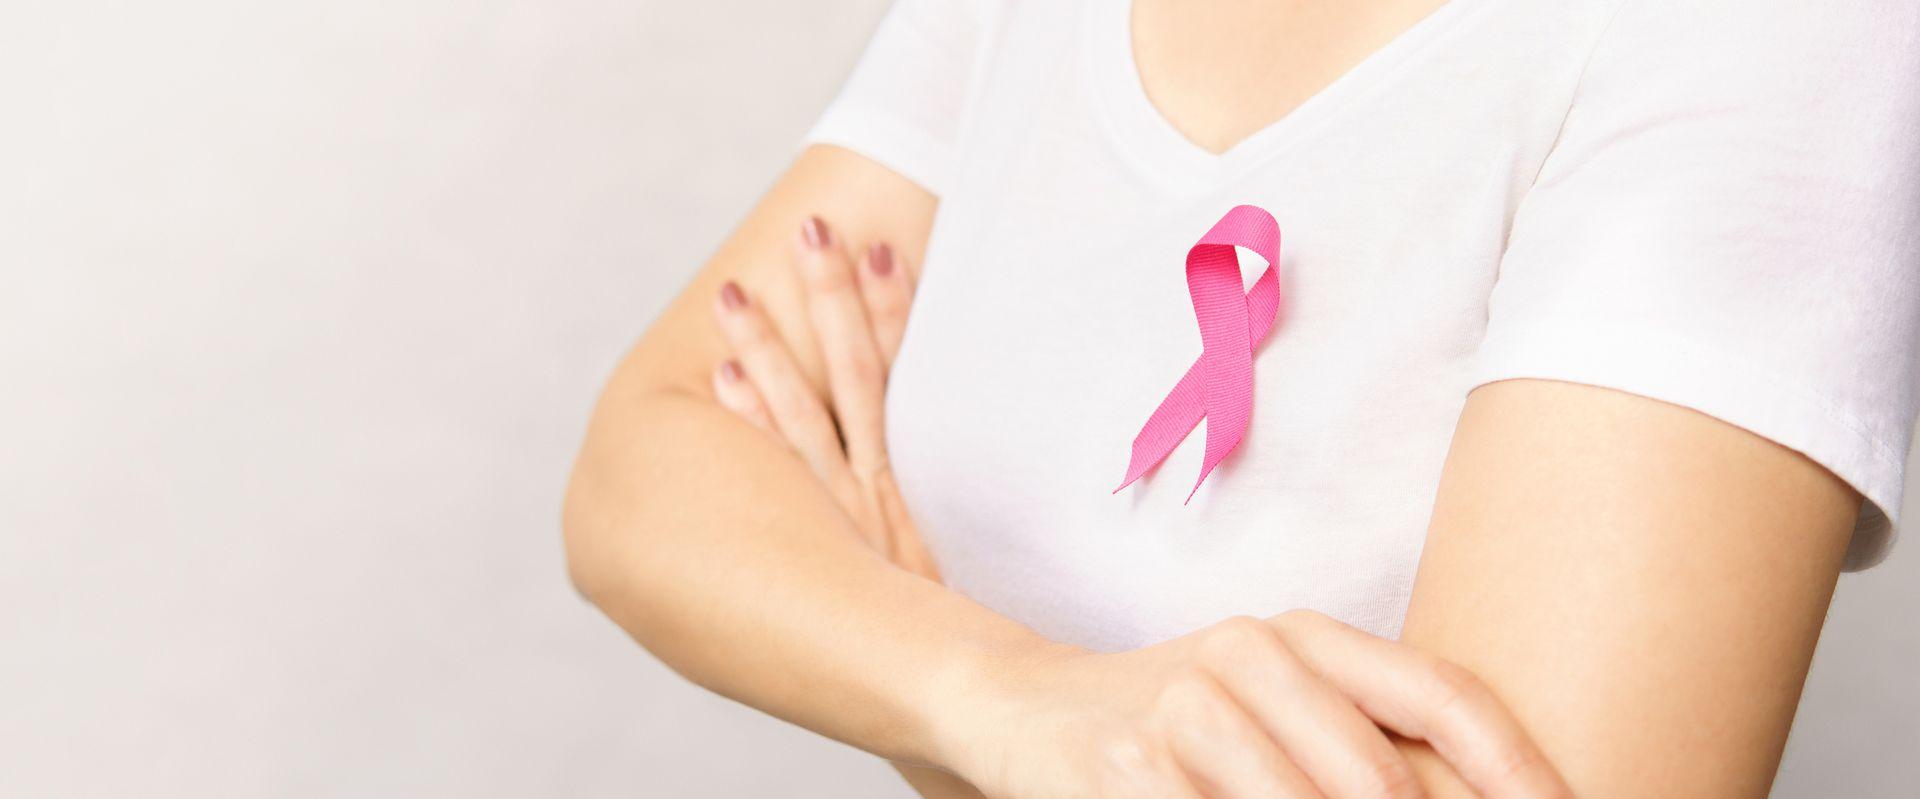 Avon namawia kobiety do badań w gabinetach oznaczonych symbolem różowej wstążki